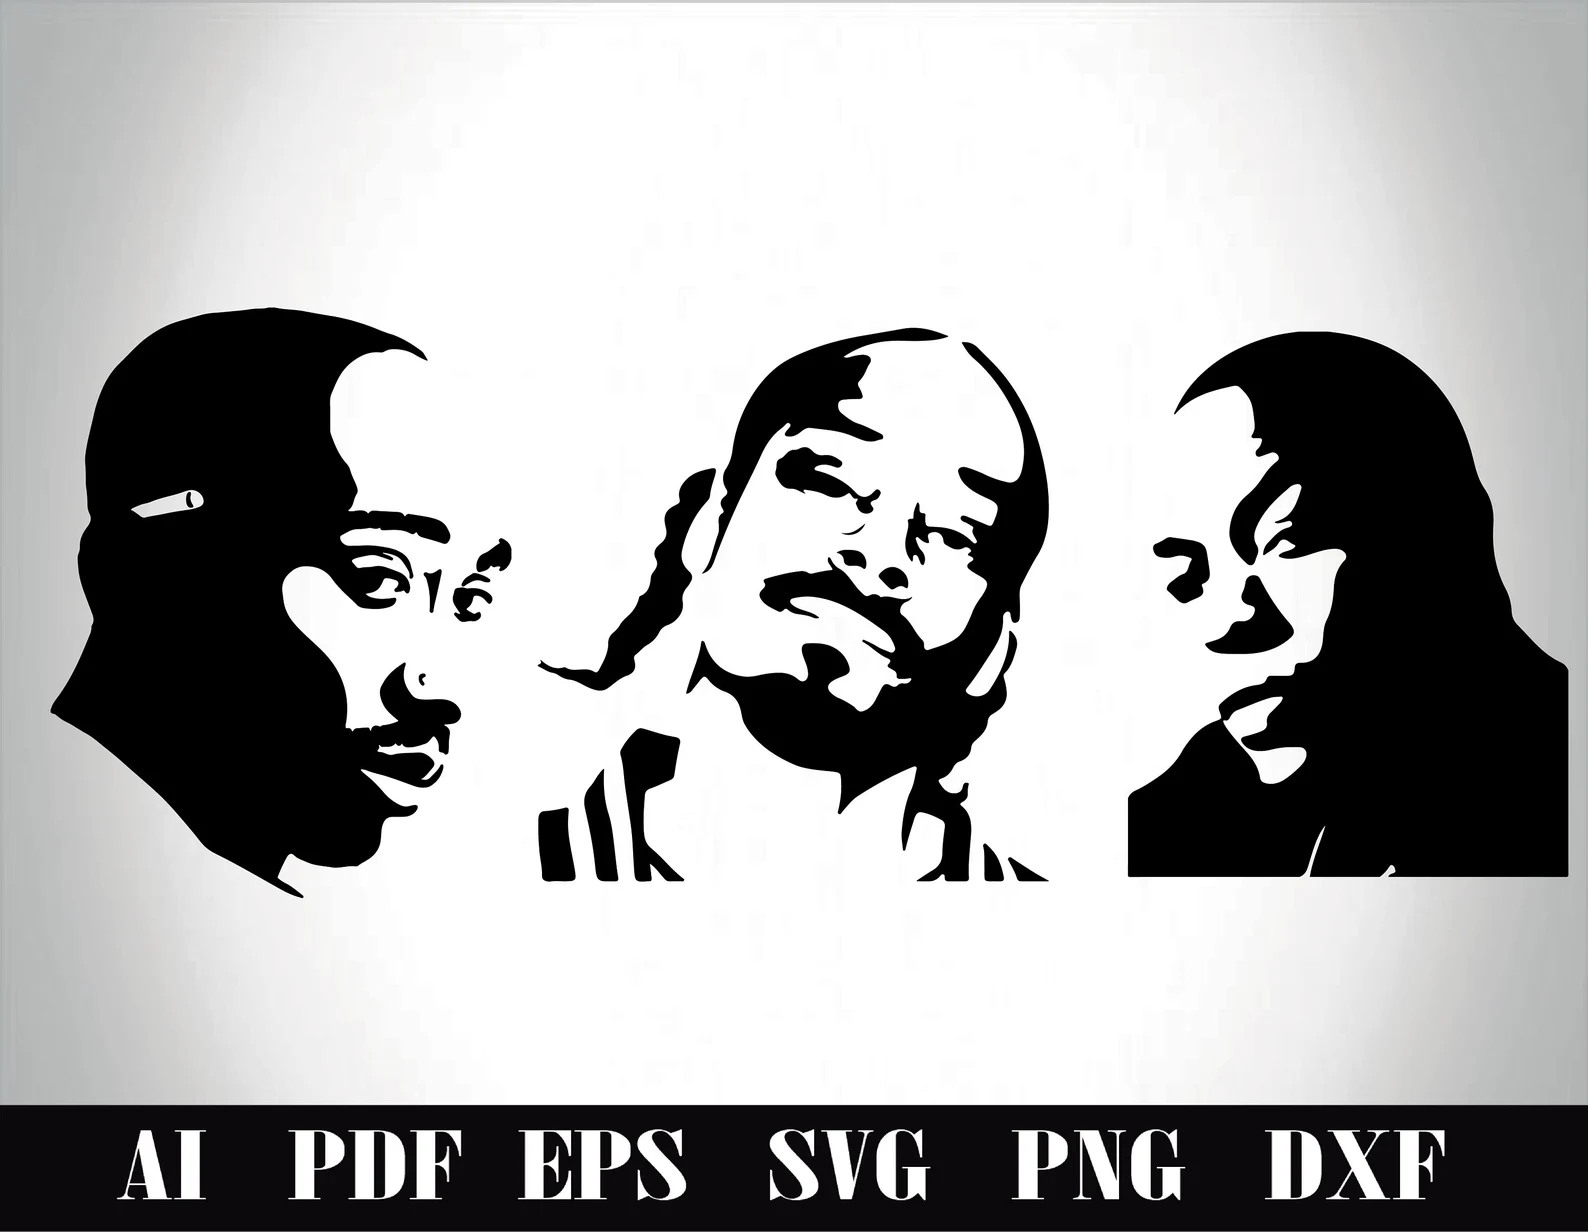 Three popular rap artists.